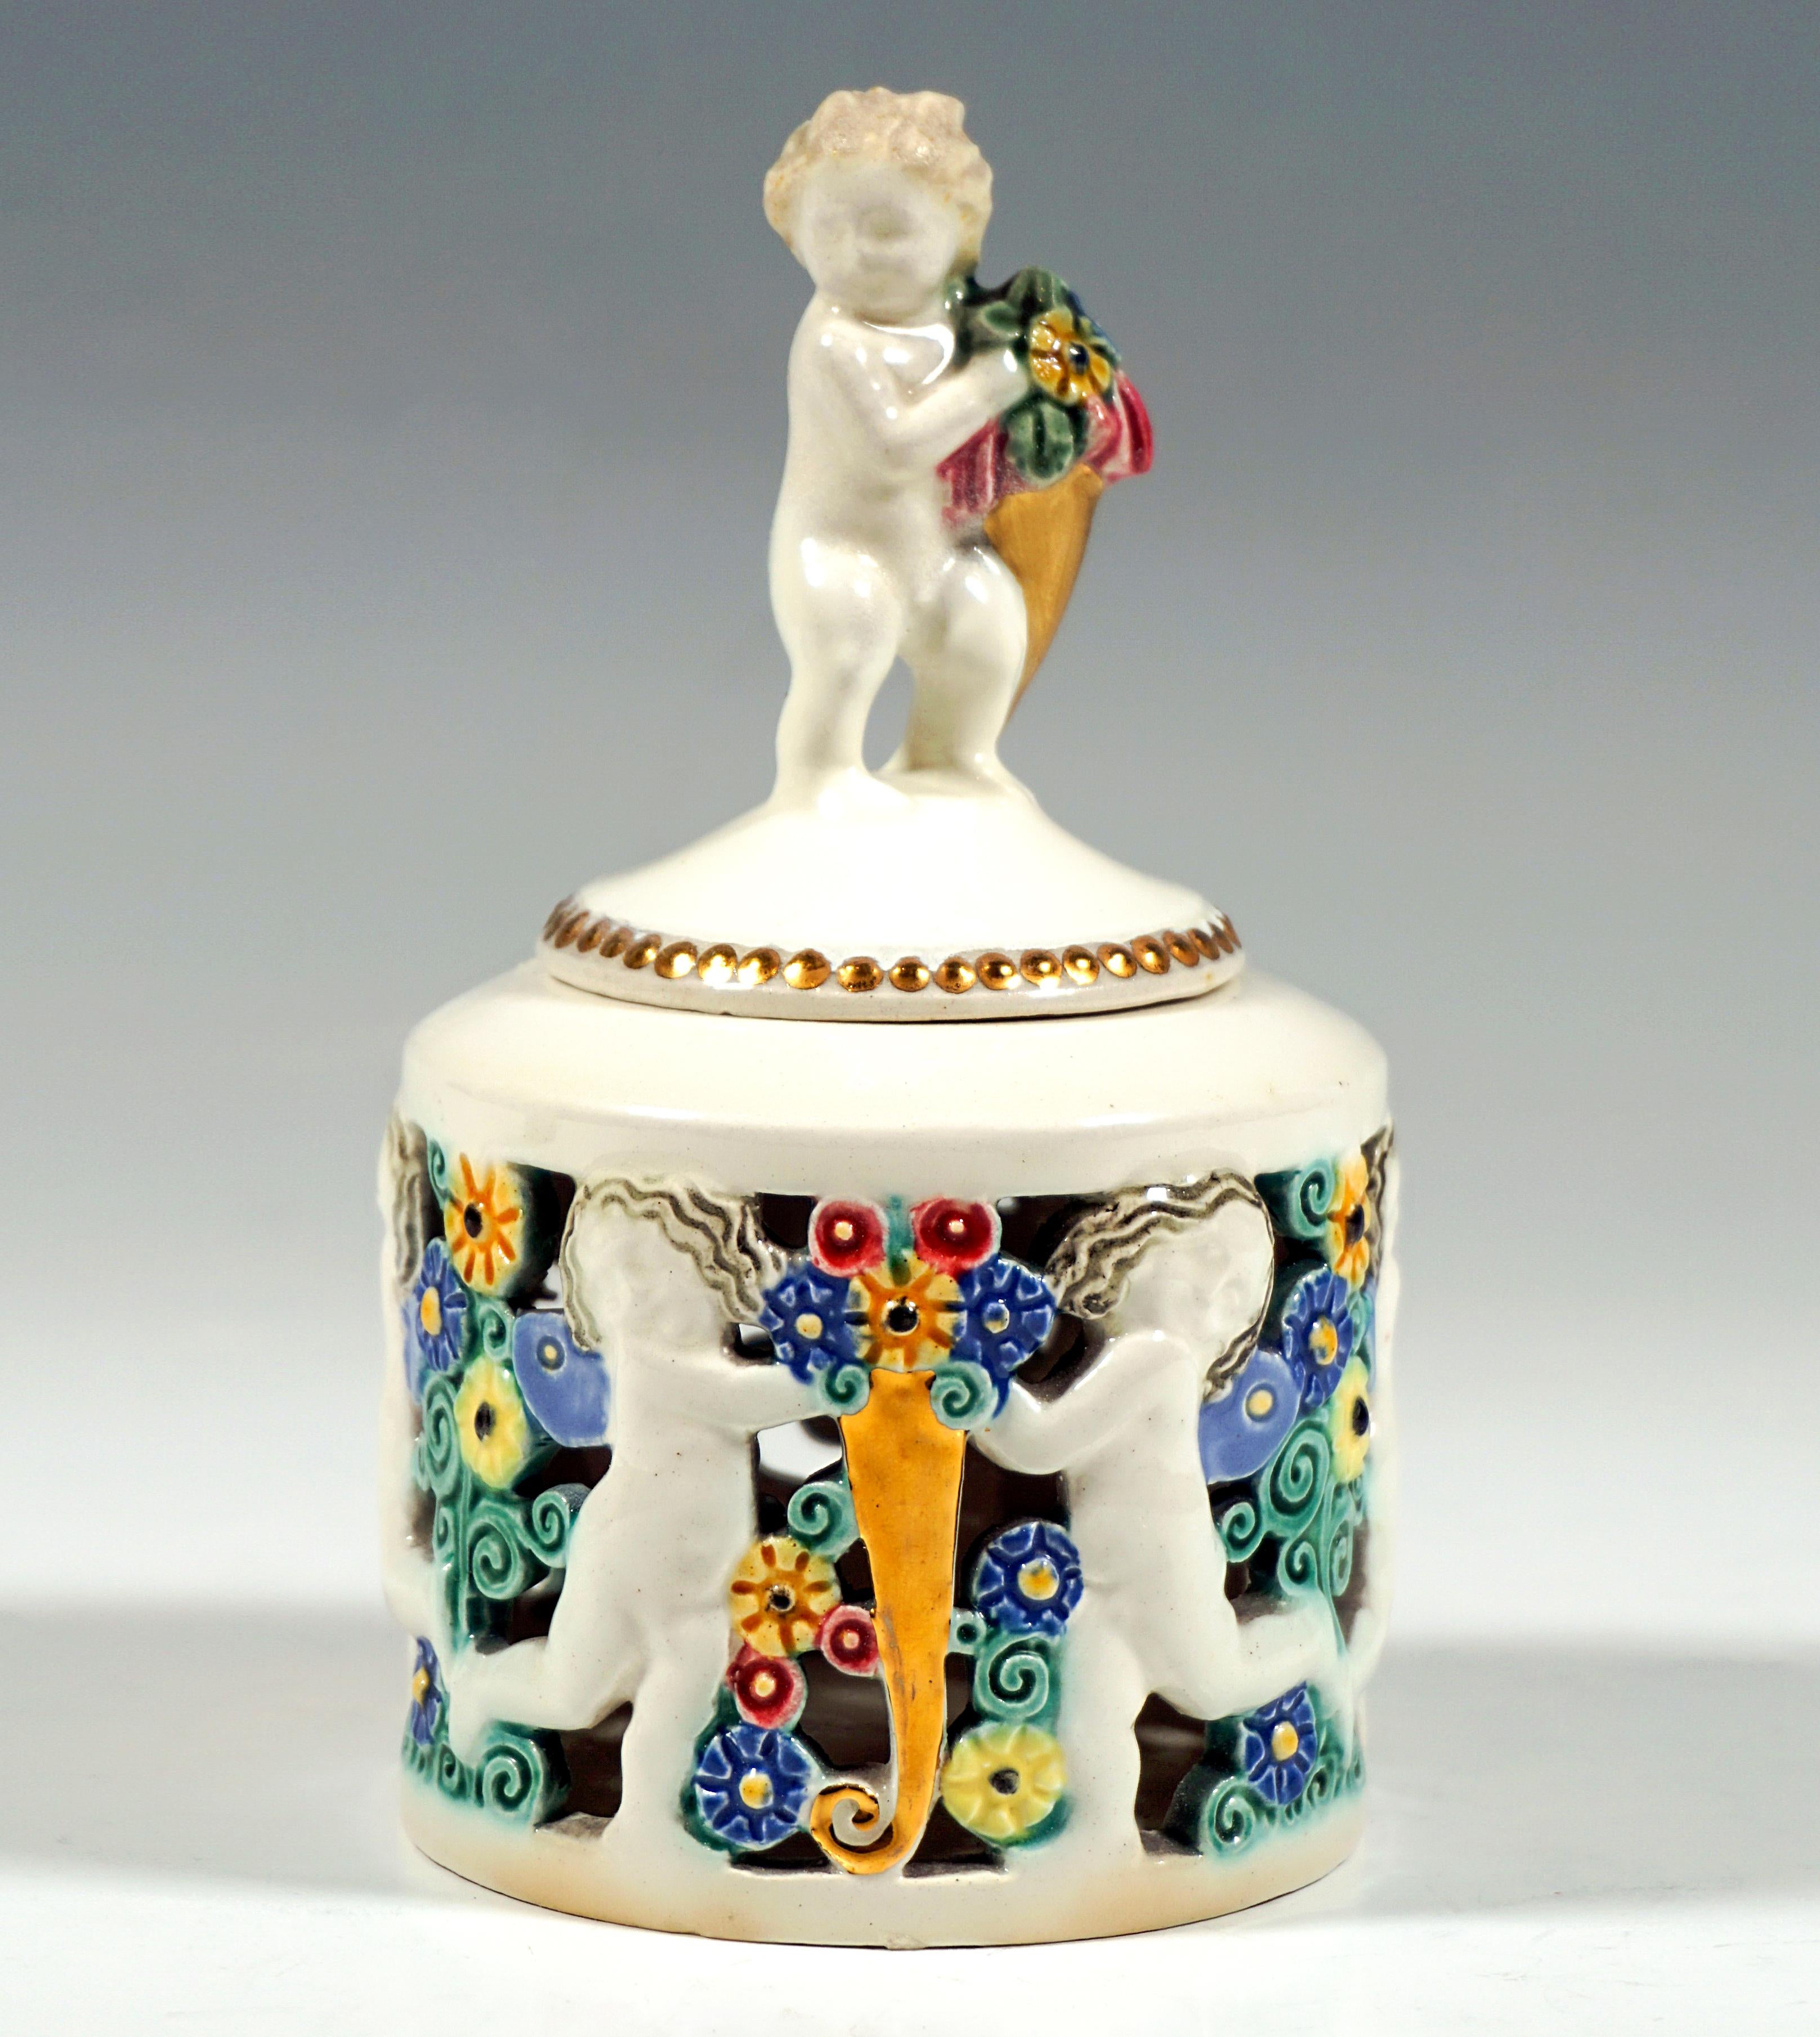 Zartes Jugendstil-Keramikstück:
Zylindrisches Gefäß mit durchbrochenem Relief aus laufenden Putten, dazwischen bunt glasierte Blumenbouquets und goldene Füllhörner mit Blüten, der leicht gewölbte, runde Deckel mit goldenem Perlenschnur-Ornament,